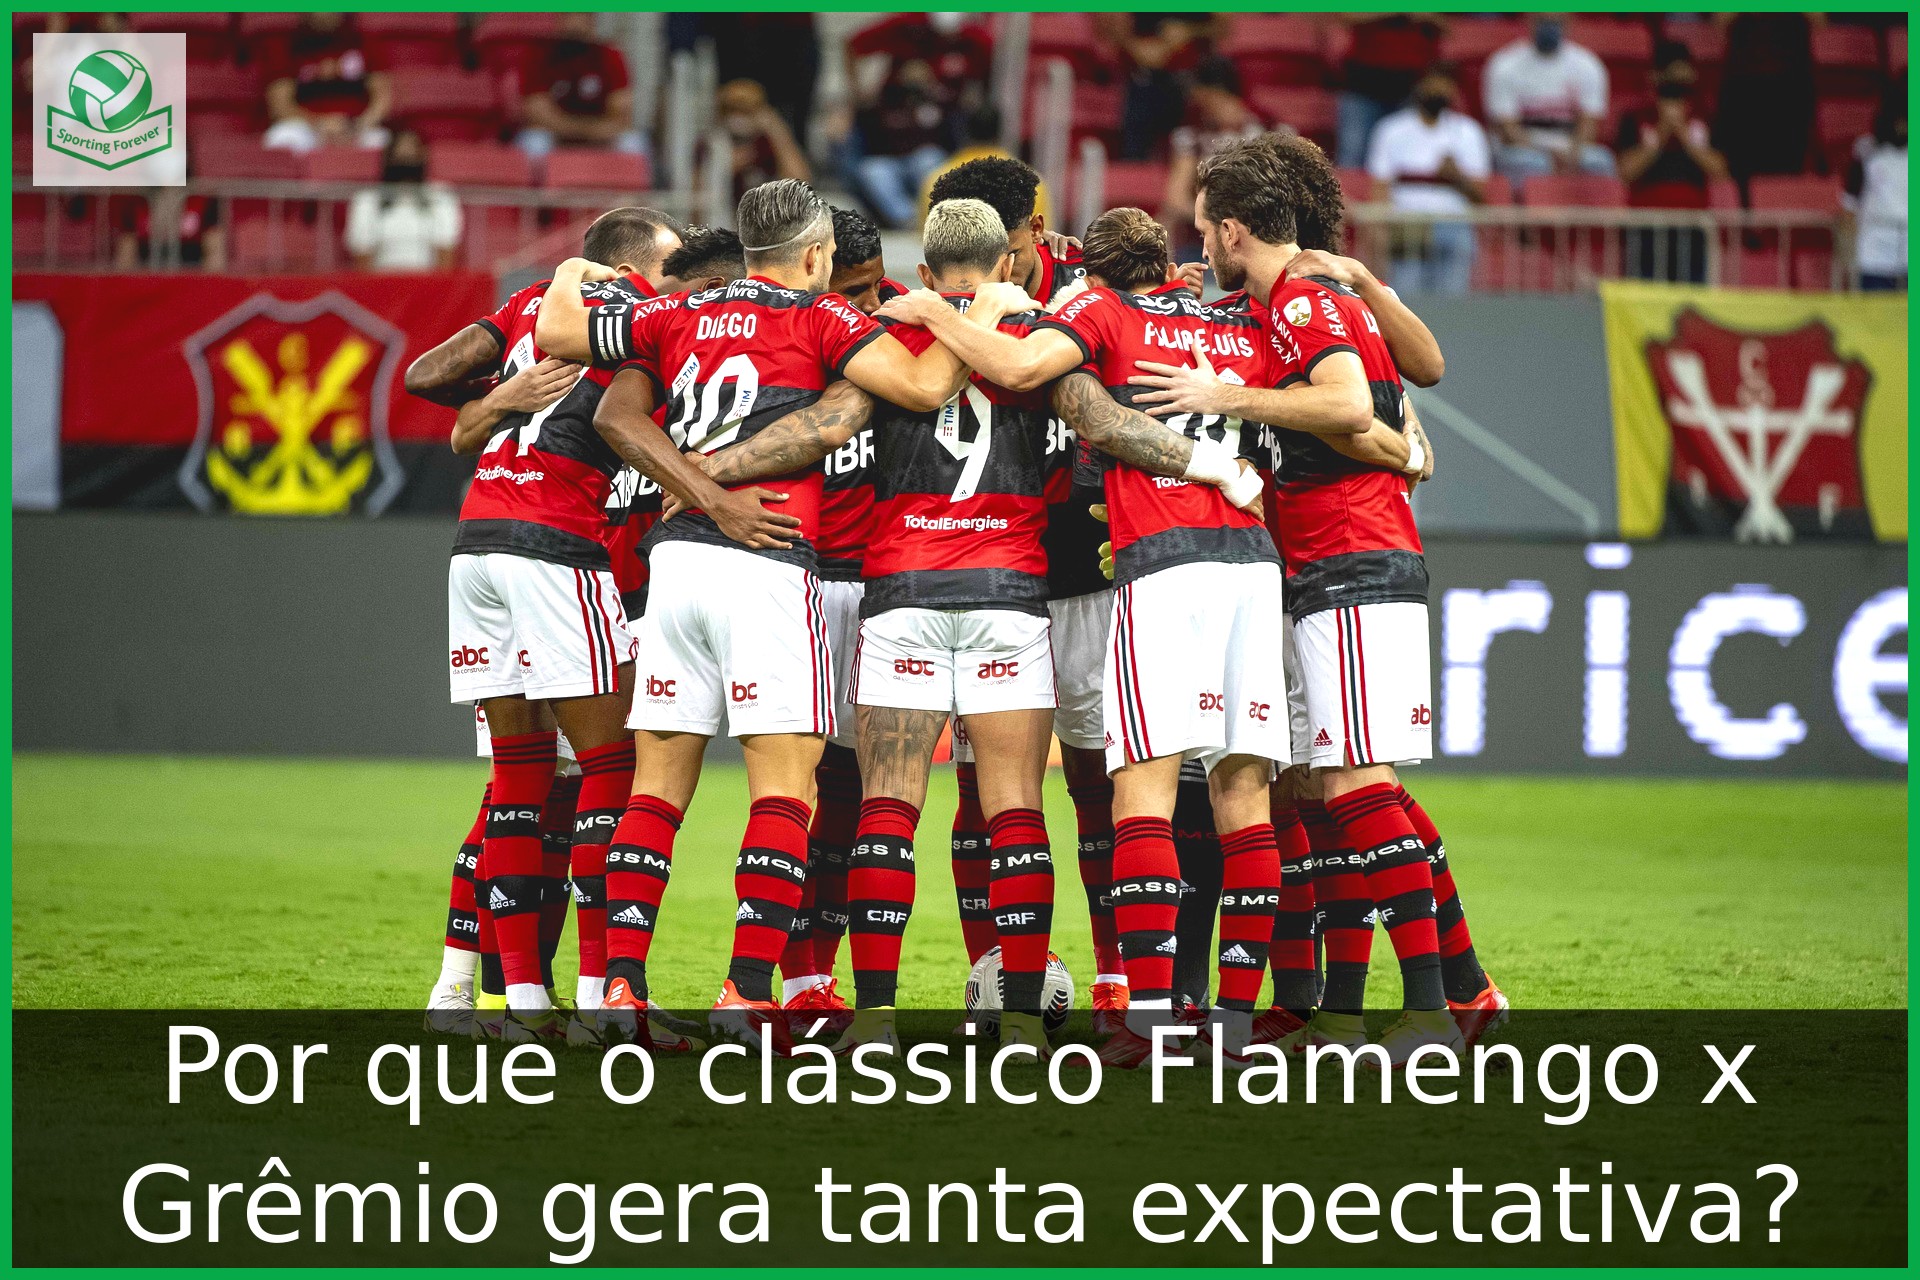 Por que o clássico Flamengo x Grêmio gera tanta expectativa?